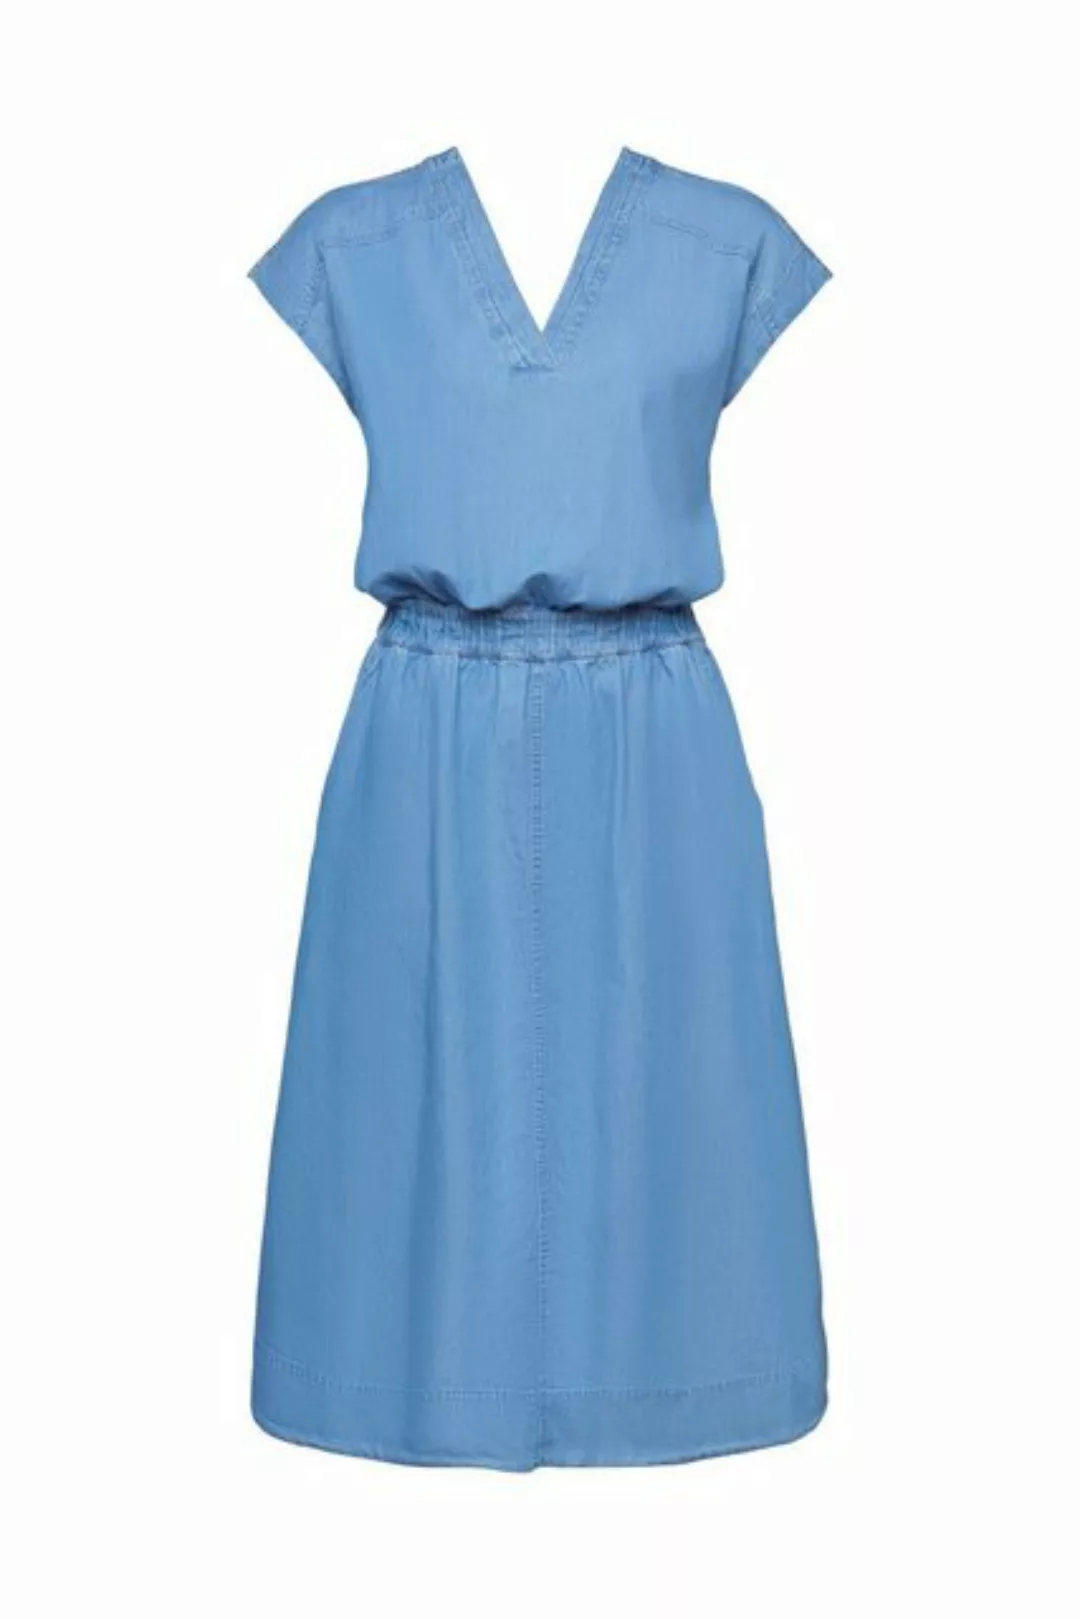 Esprit Damen Kleid 034ee1e319 günstig online kaufen